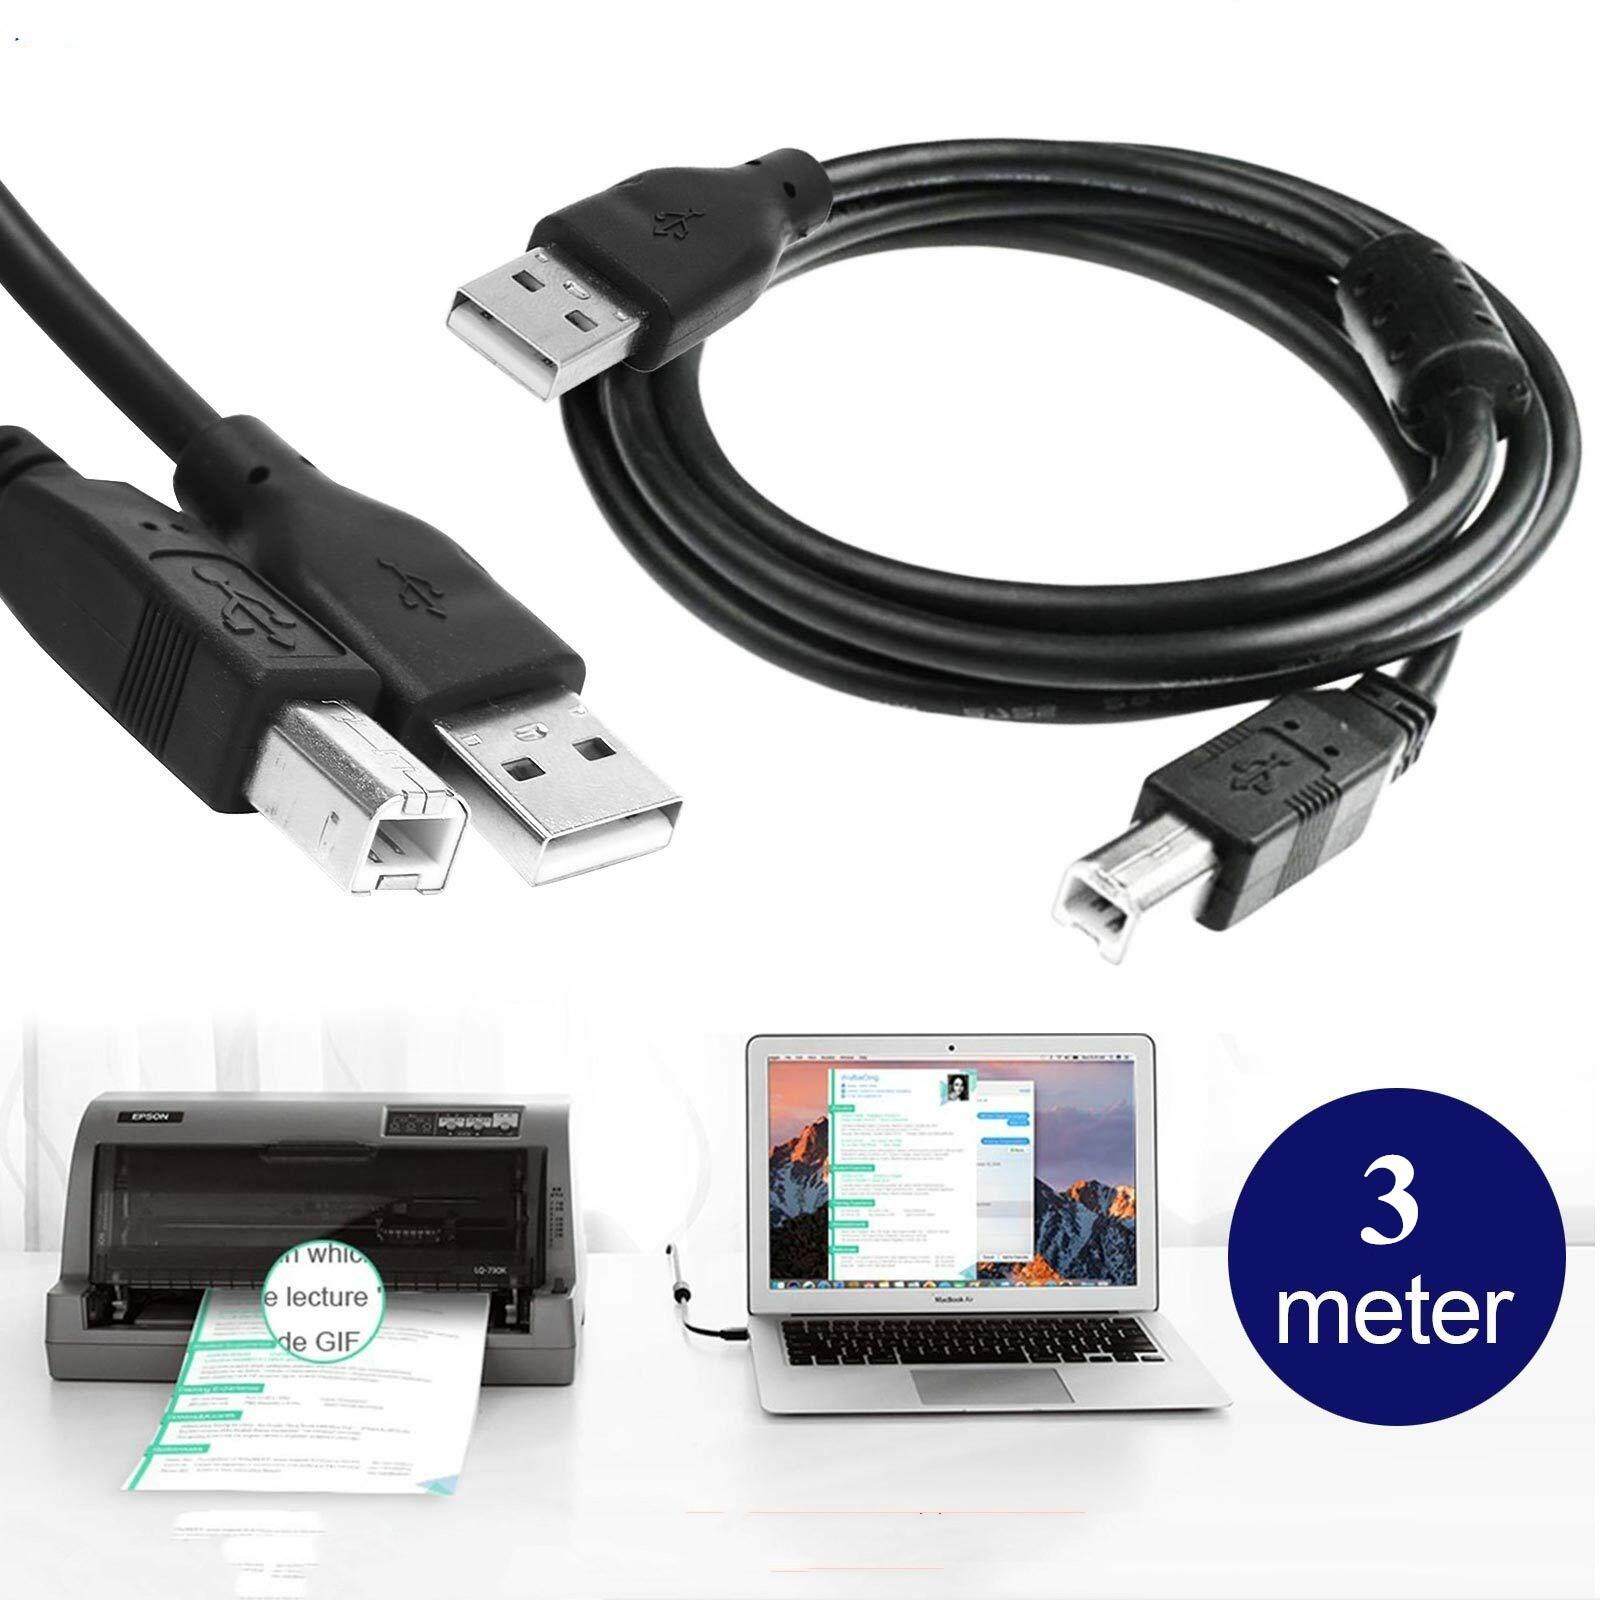 USB 2.0 A to B Printer Cable, Premium Quality for Epson, HP, USB Printers 1.8m/3m/5m/10m